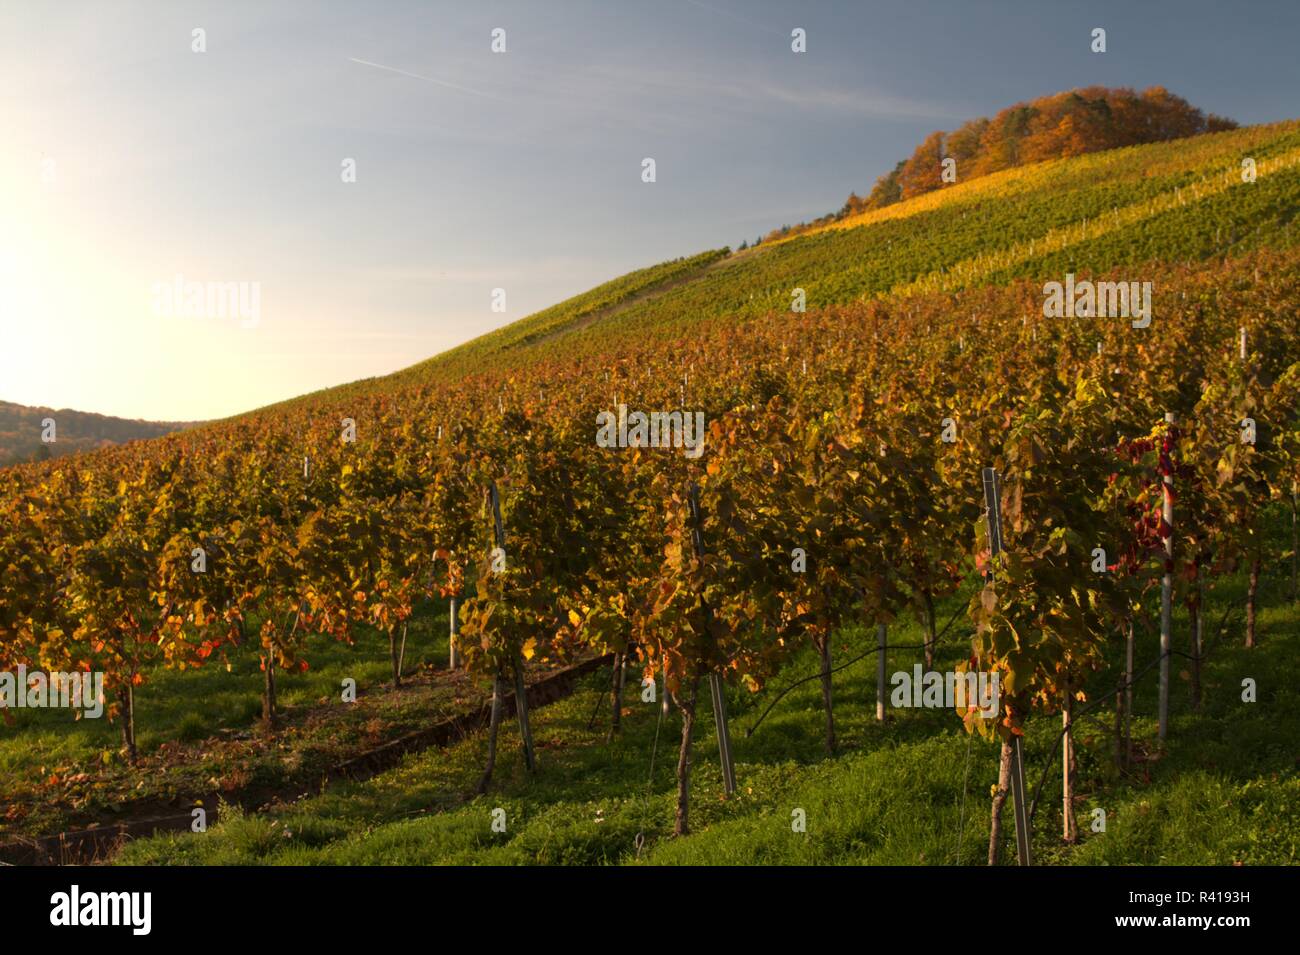 vineyards in autumn Stock Photo